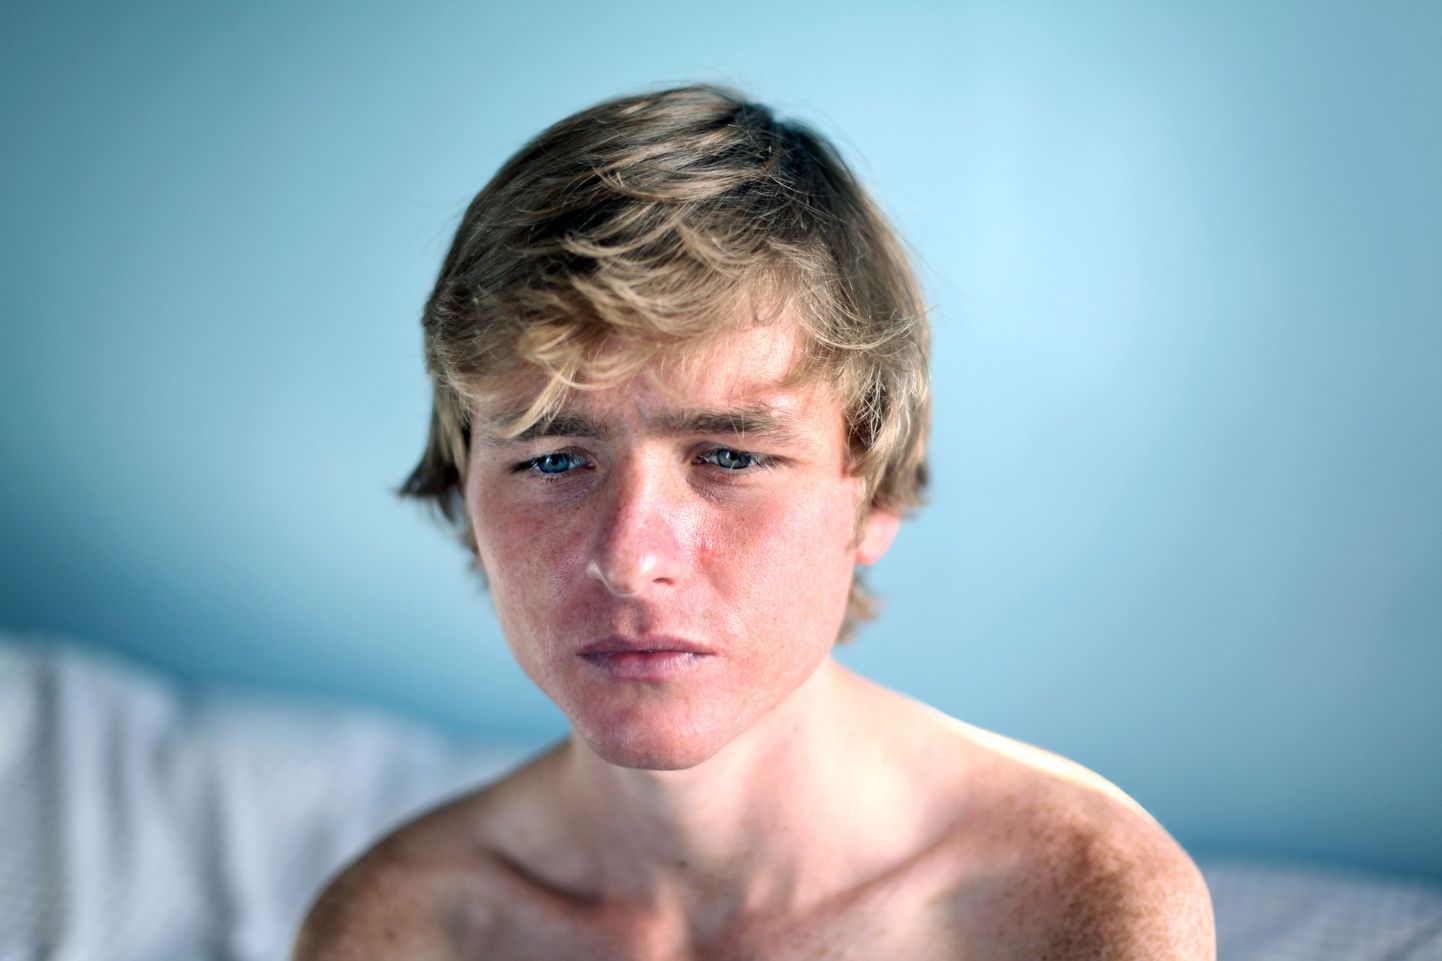 Лучшее портретное фото года сняла Лаура Паннак из журнала Guardian. На снимке - больной анорексией мальчик Грэхем.